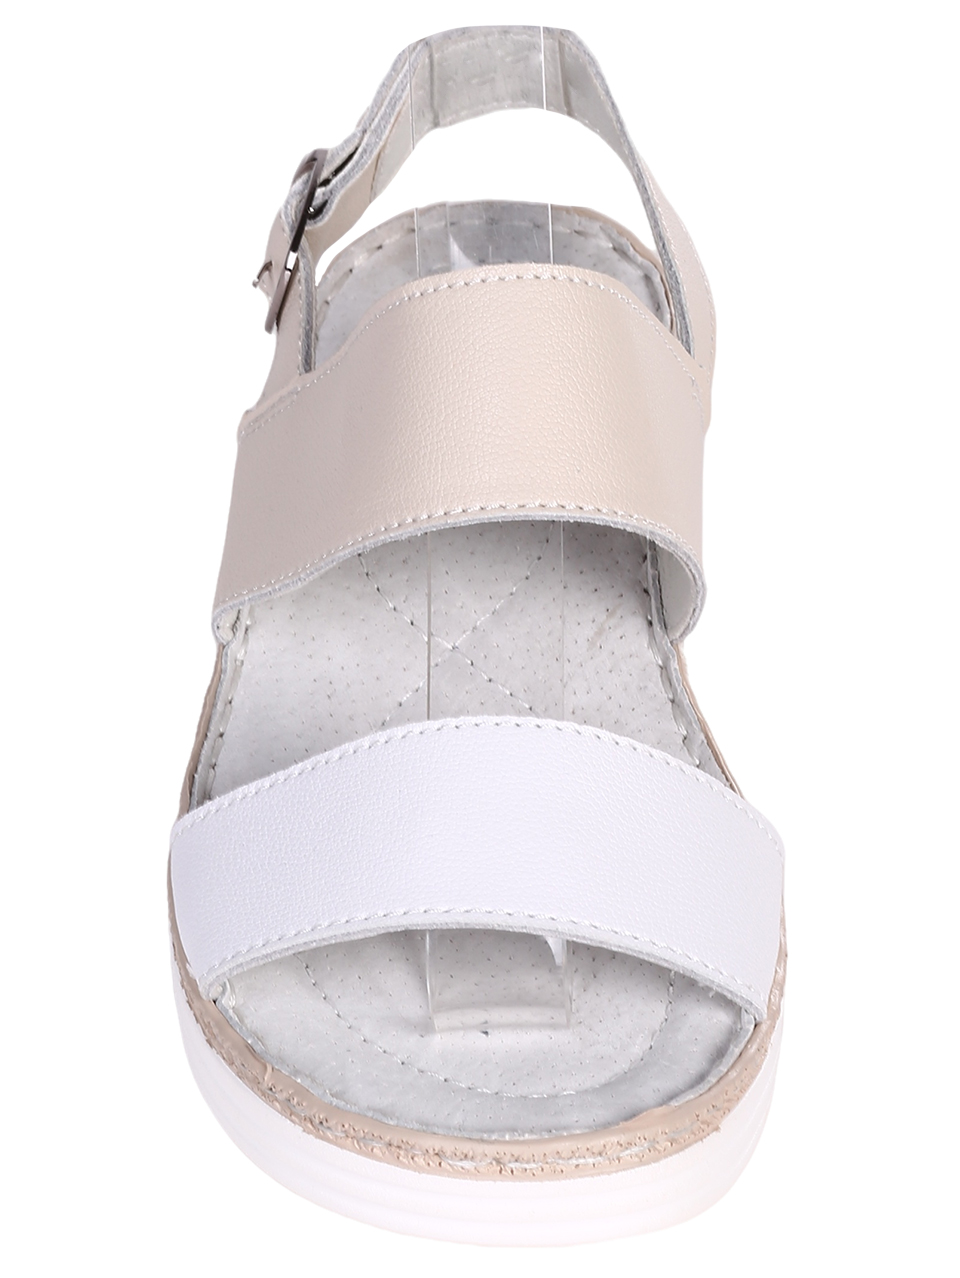 Ежедневни дамски сандали на платформа от естествена кожа 4AF-23167 beige/white